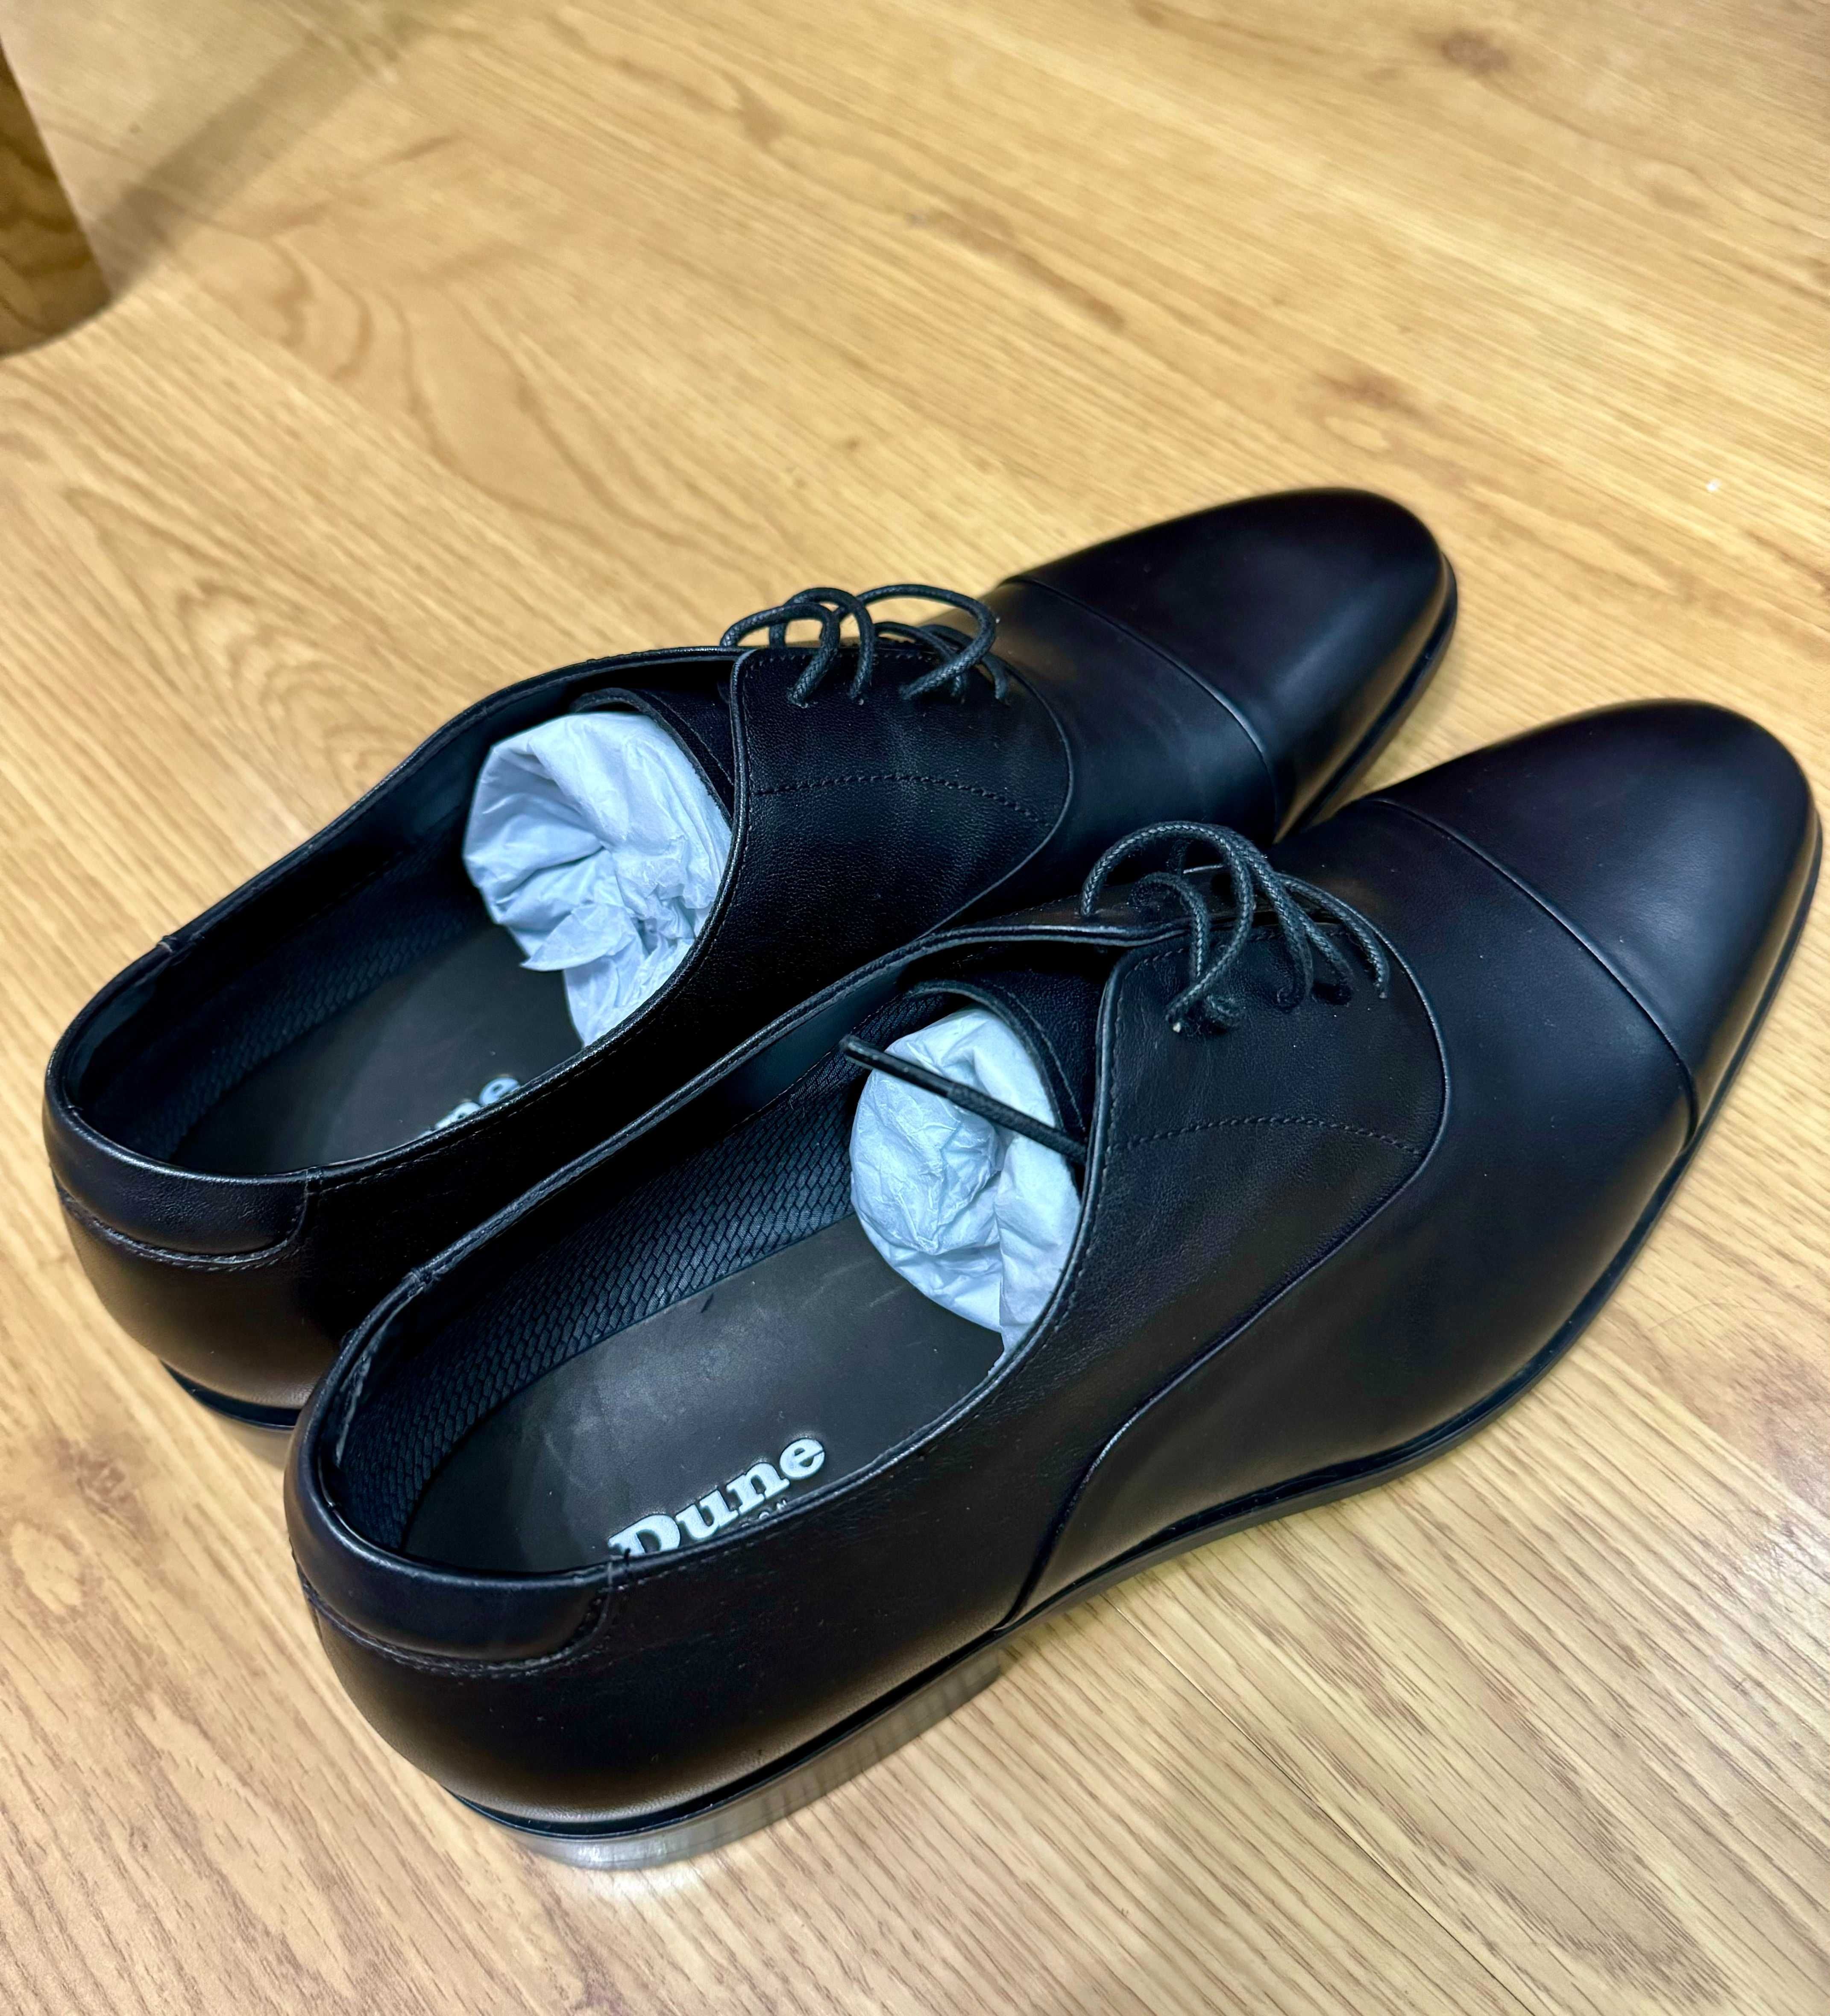 Продам 2 пары новых мужских туфель Dune London